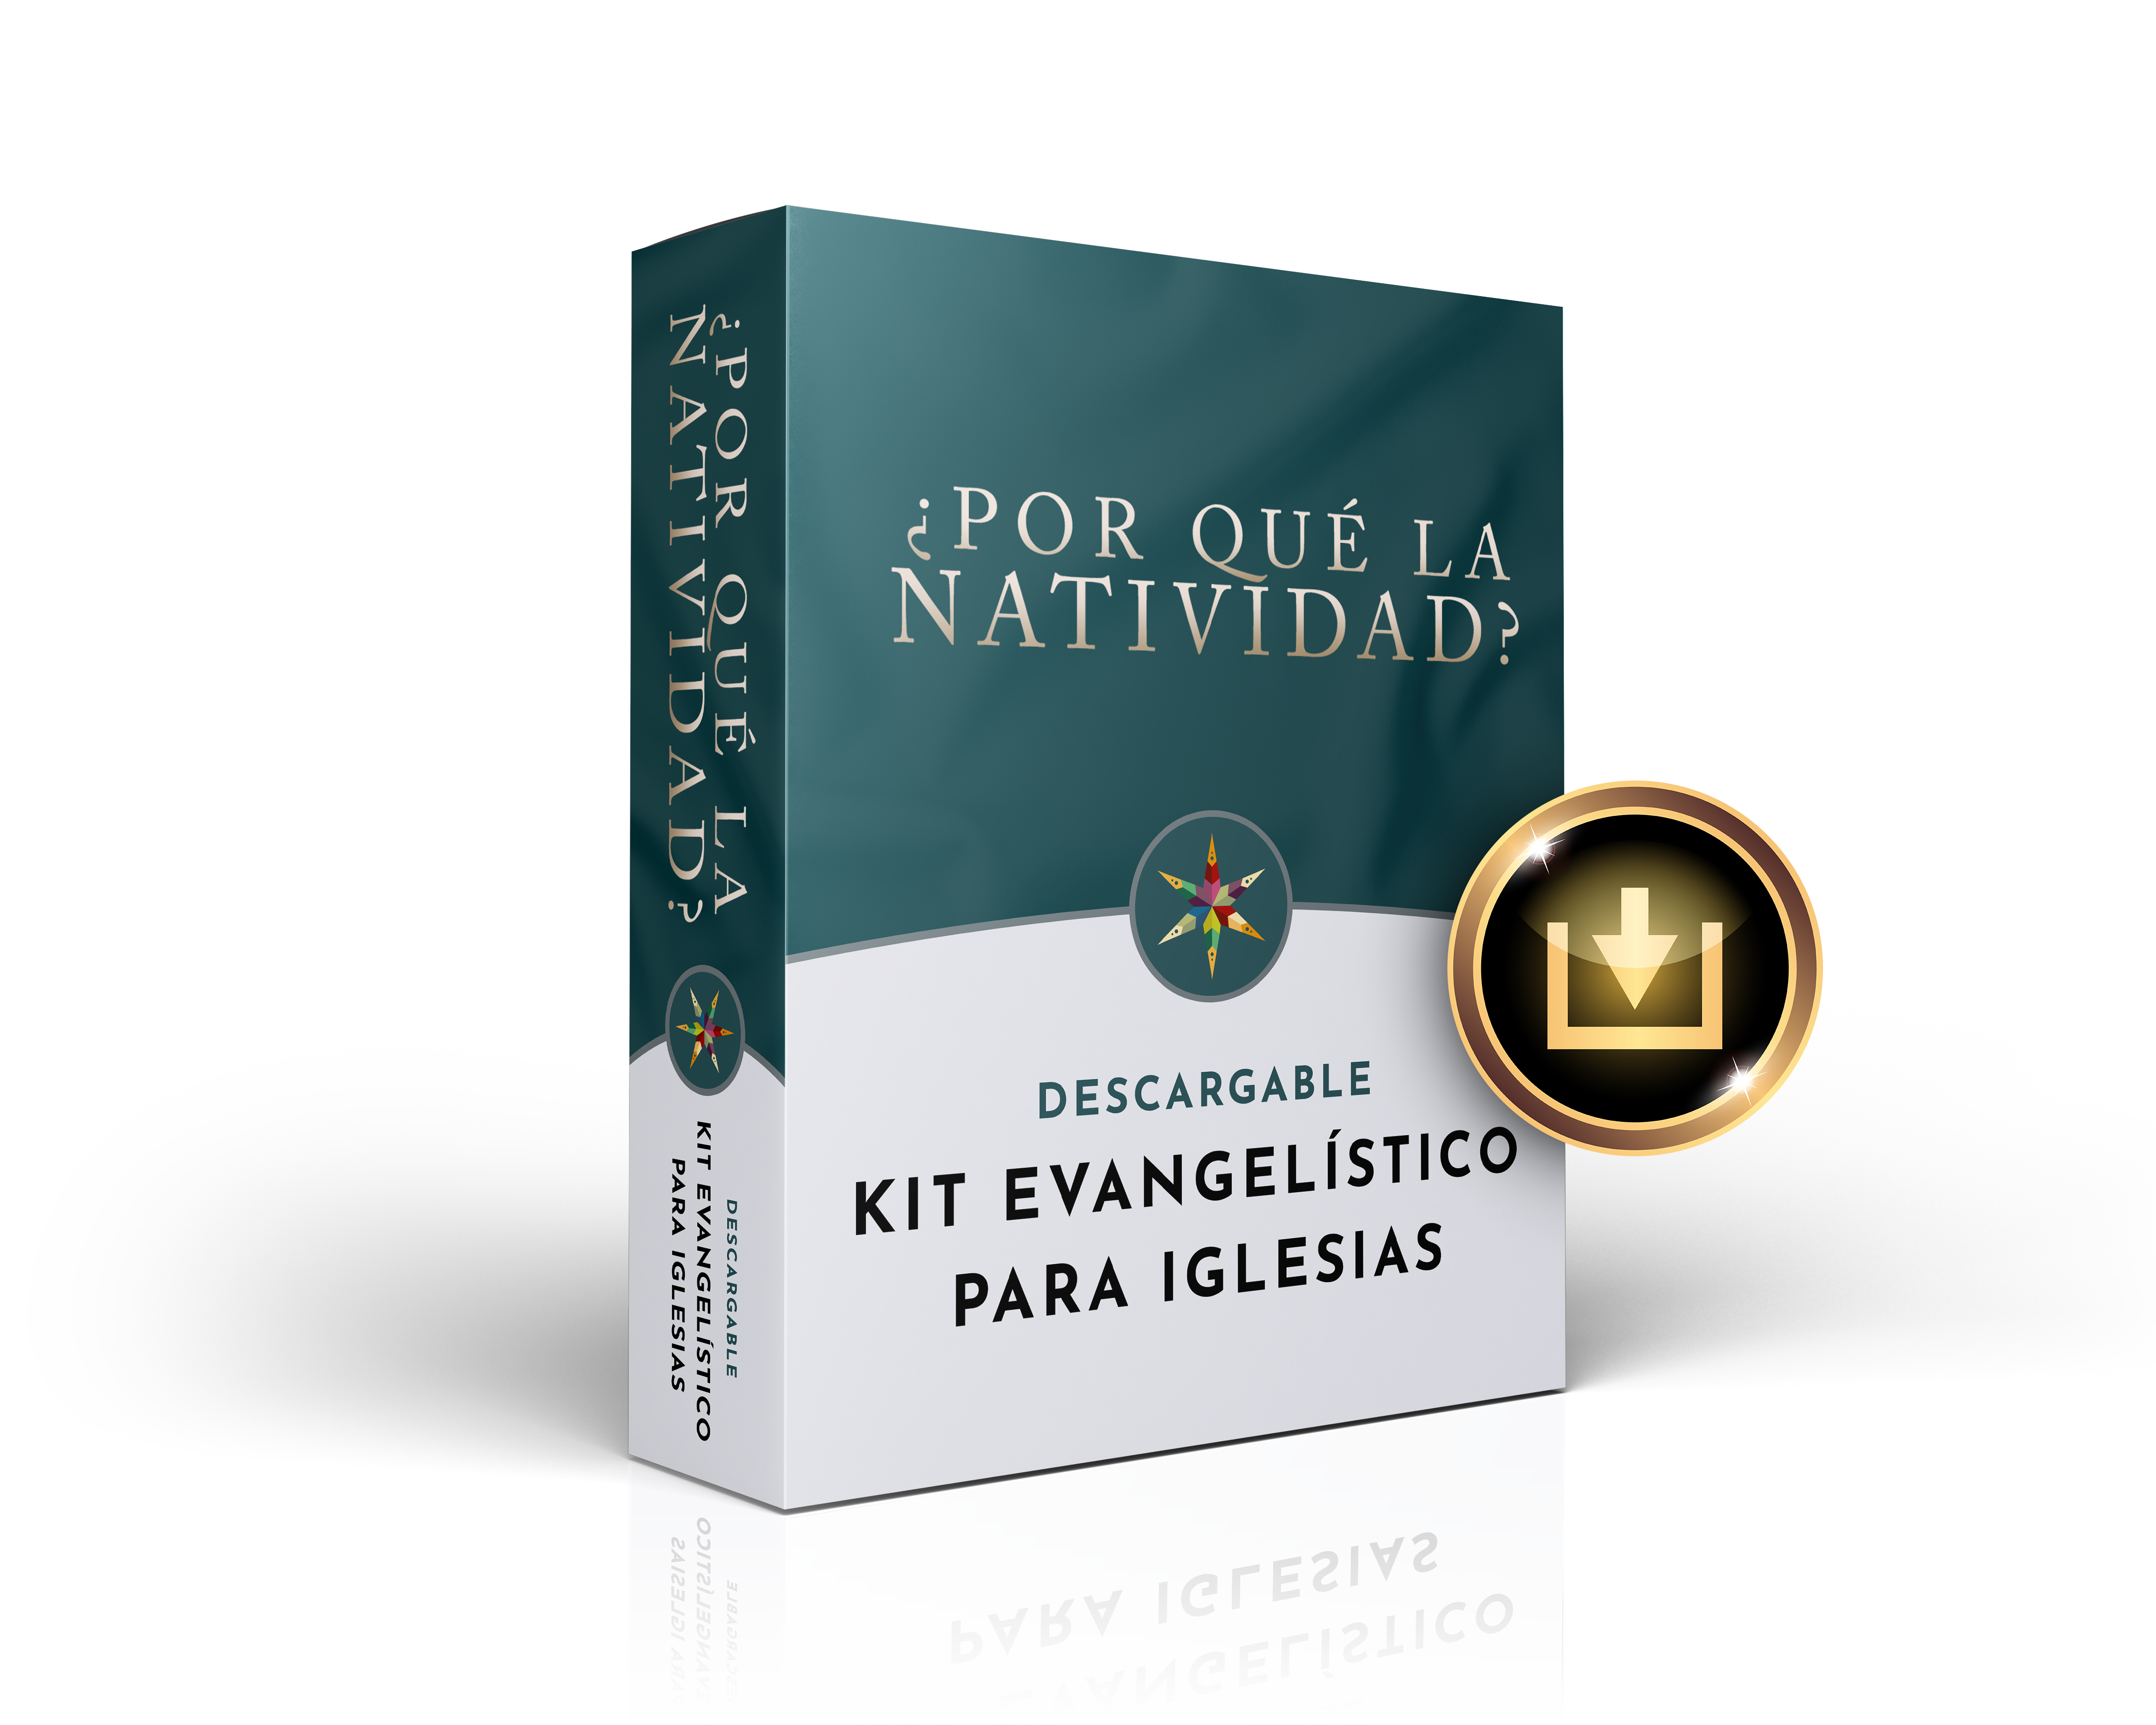 Why the Nativity Church Kit - Spanish